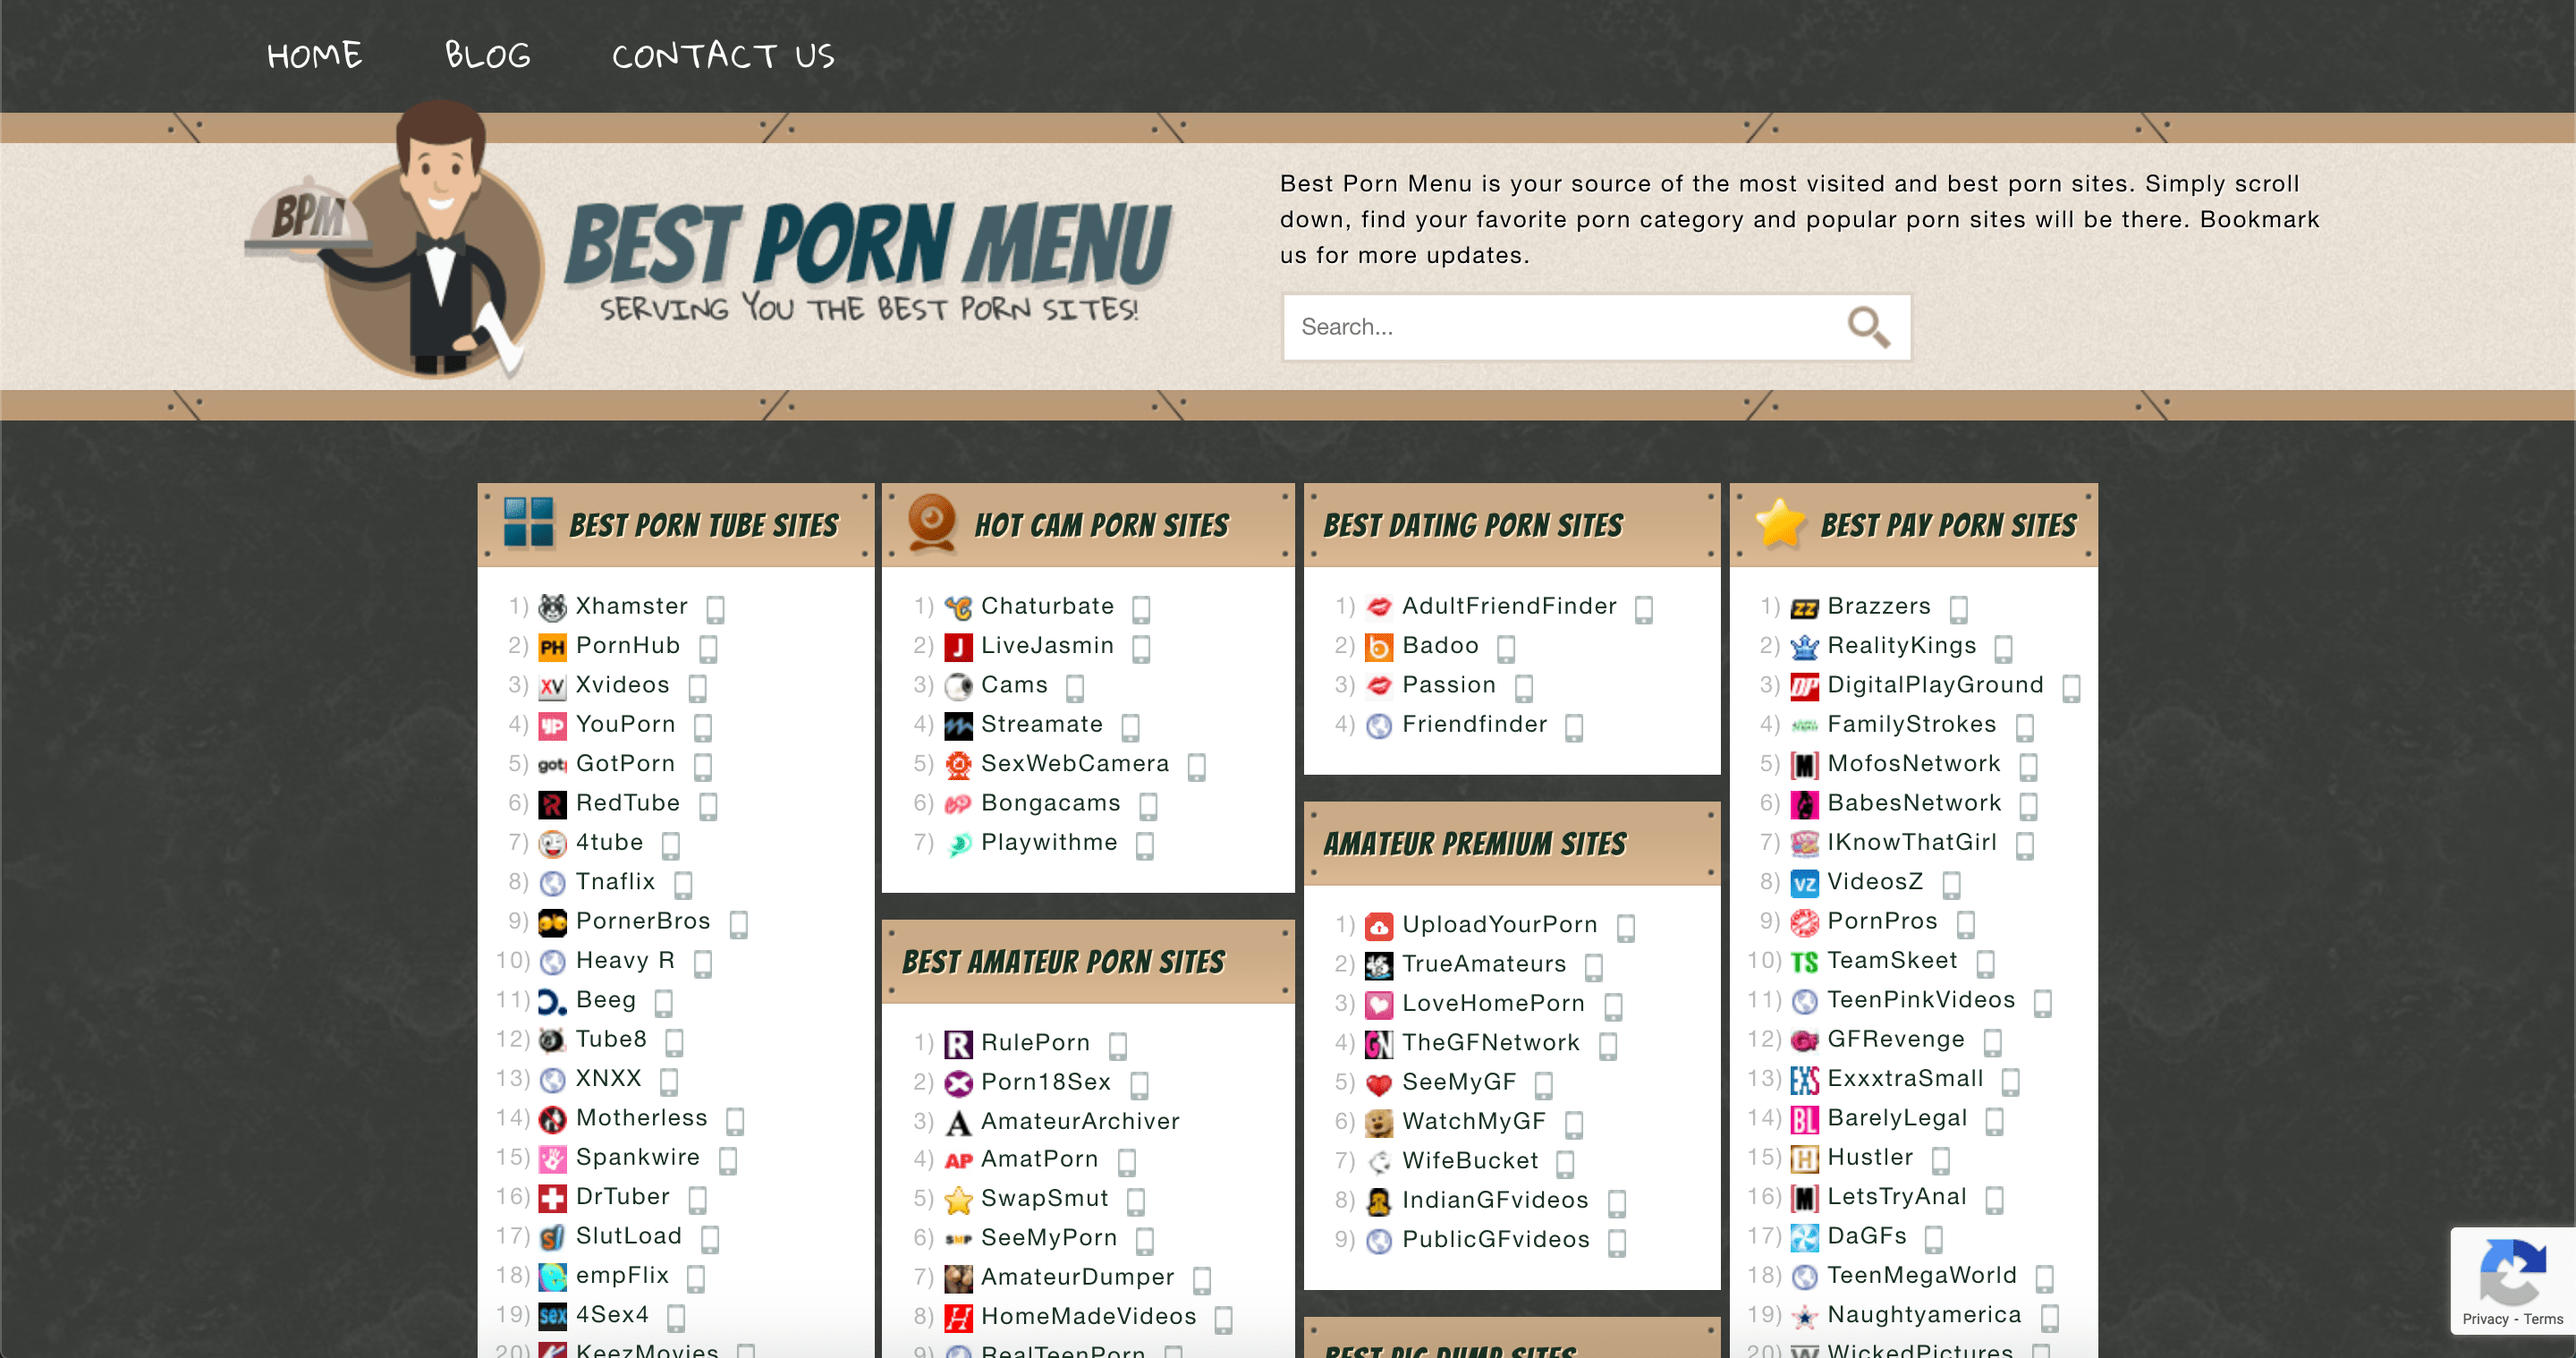 Best Porn Menu, Serving The Best Porn Sites photo